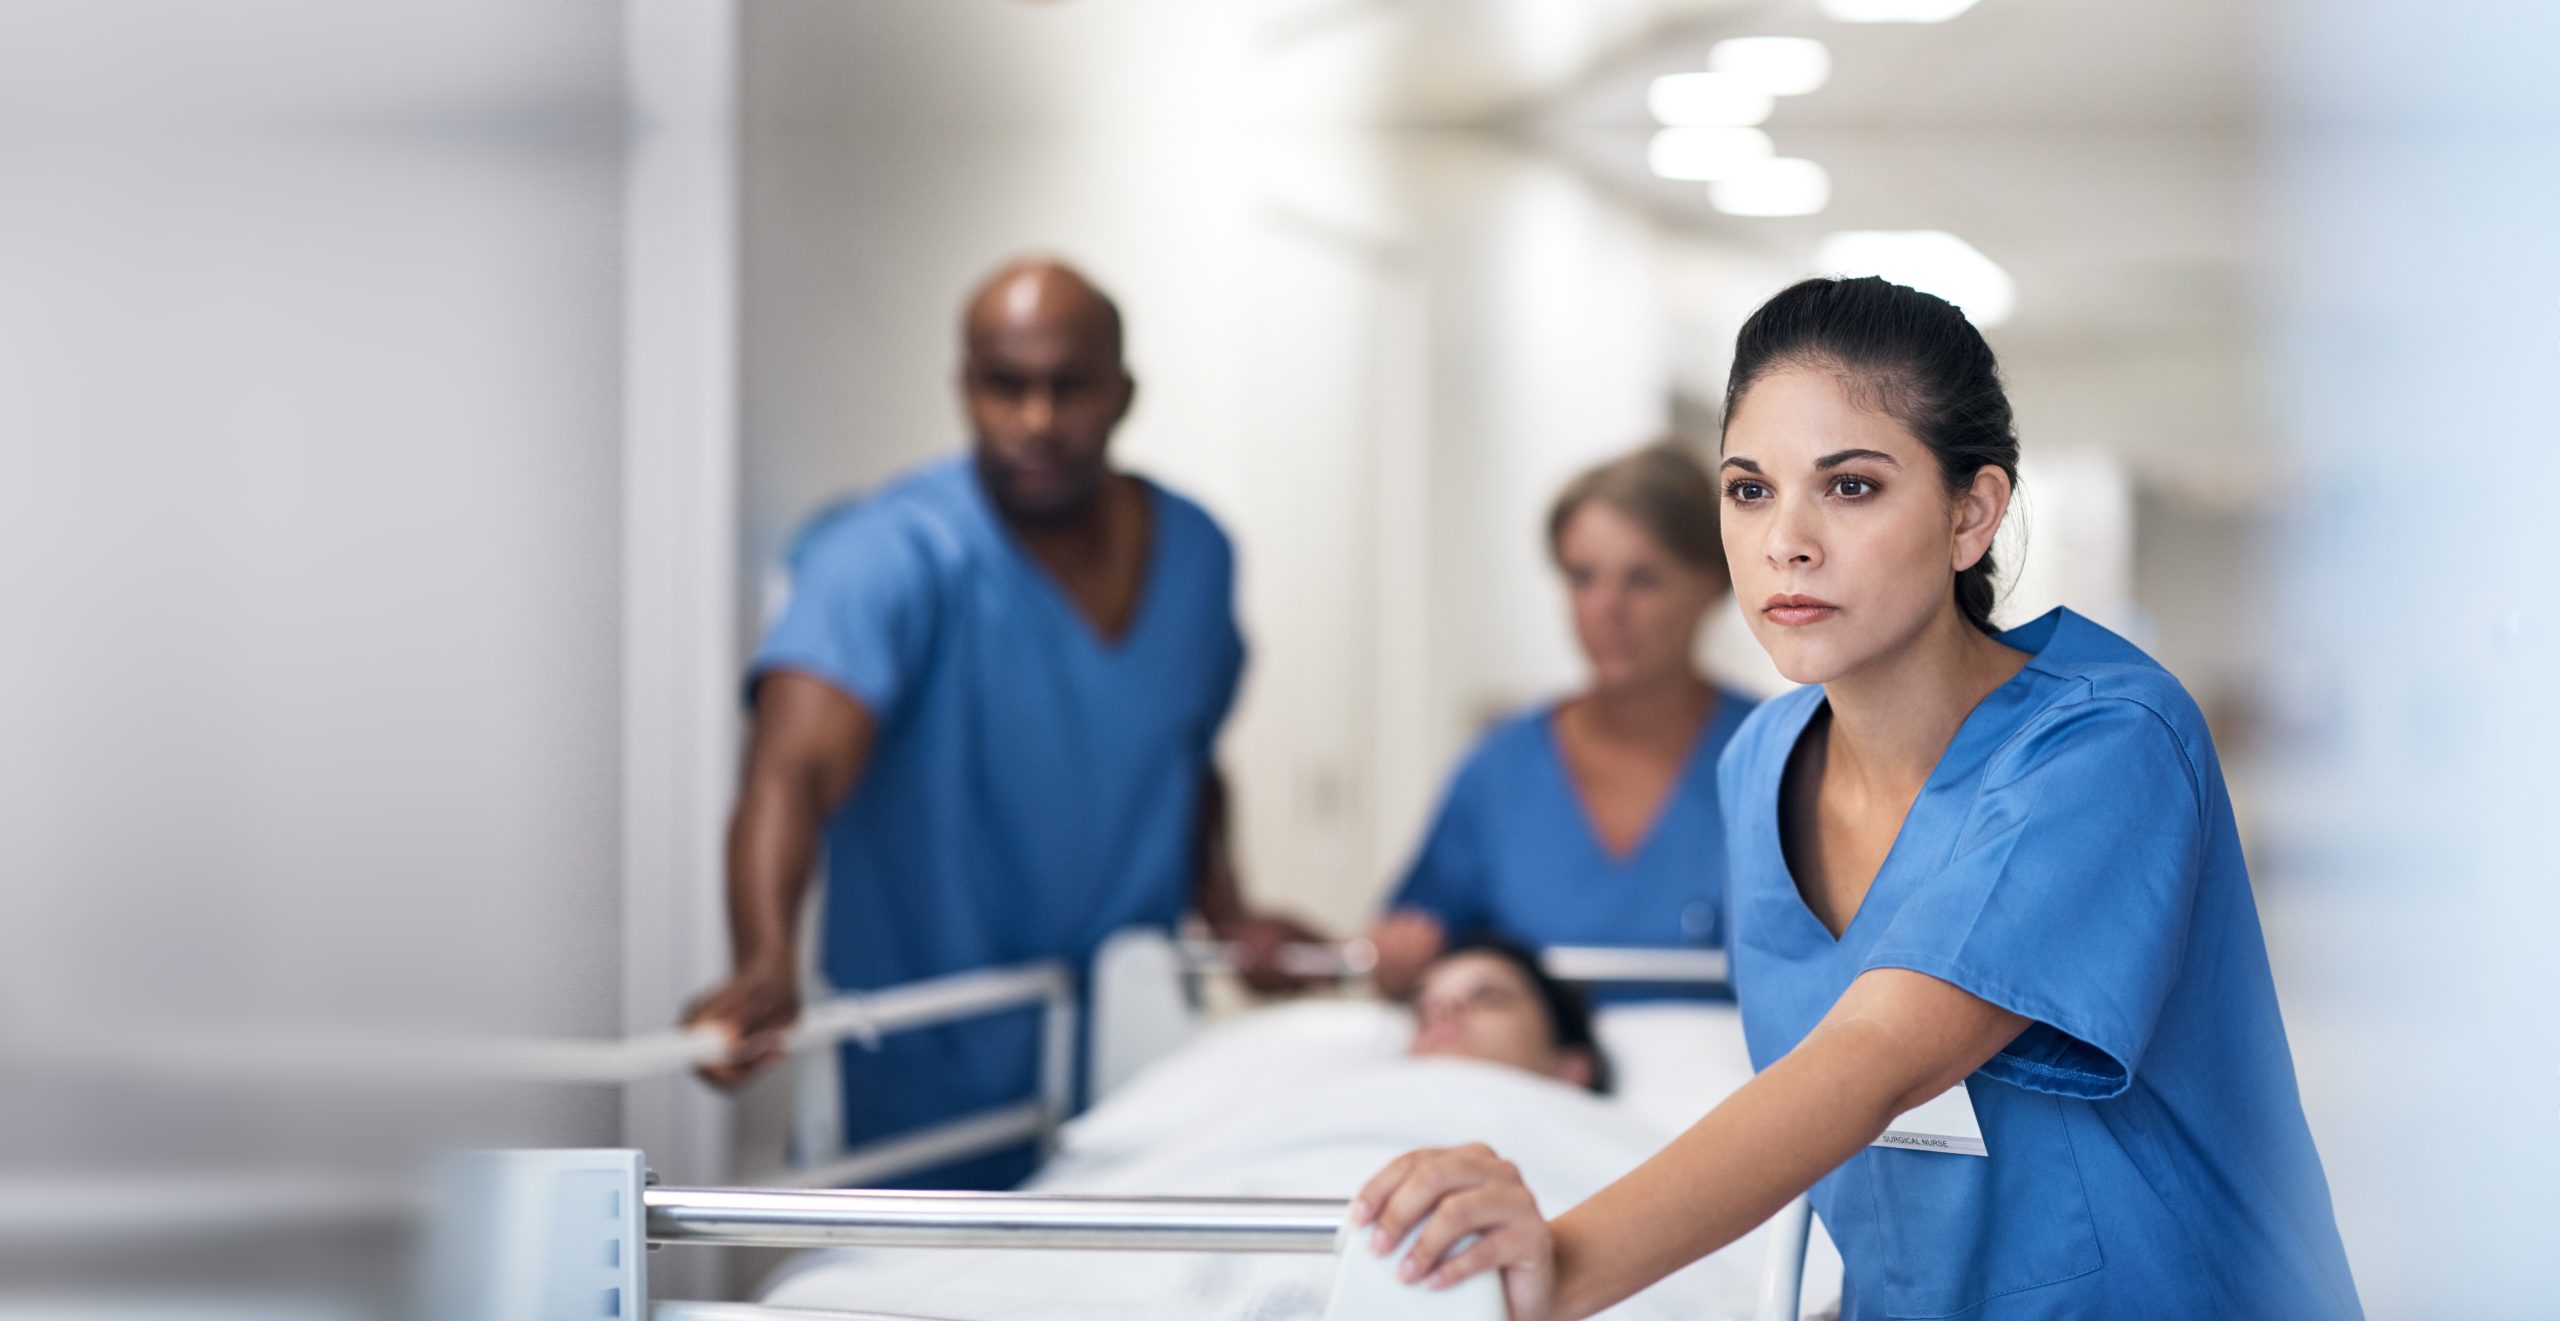 Nursing pushing a hospital bed down a hospital hallway